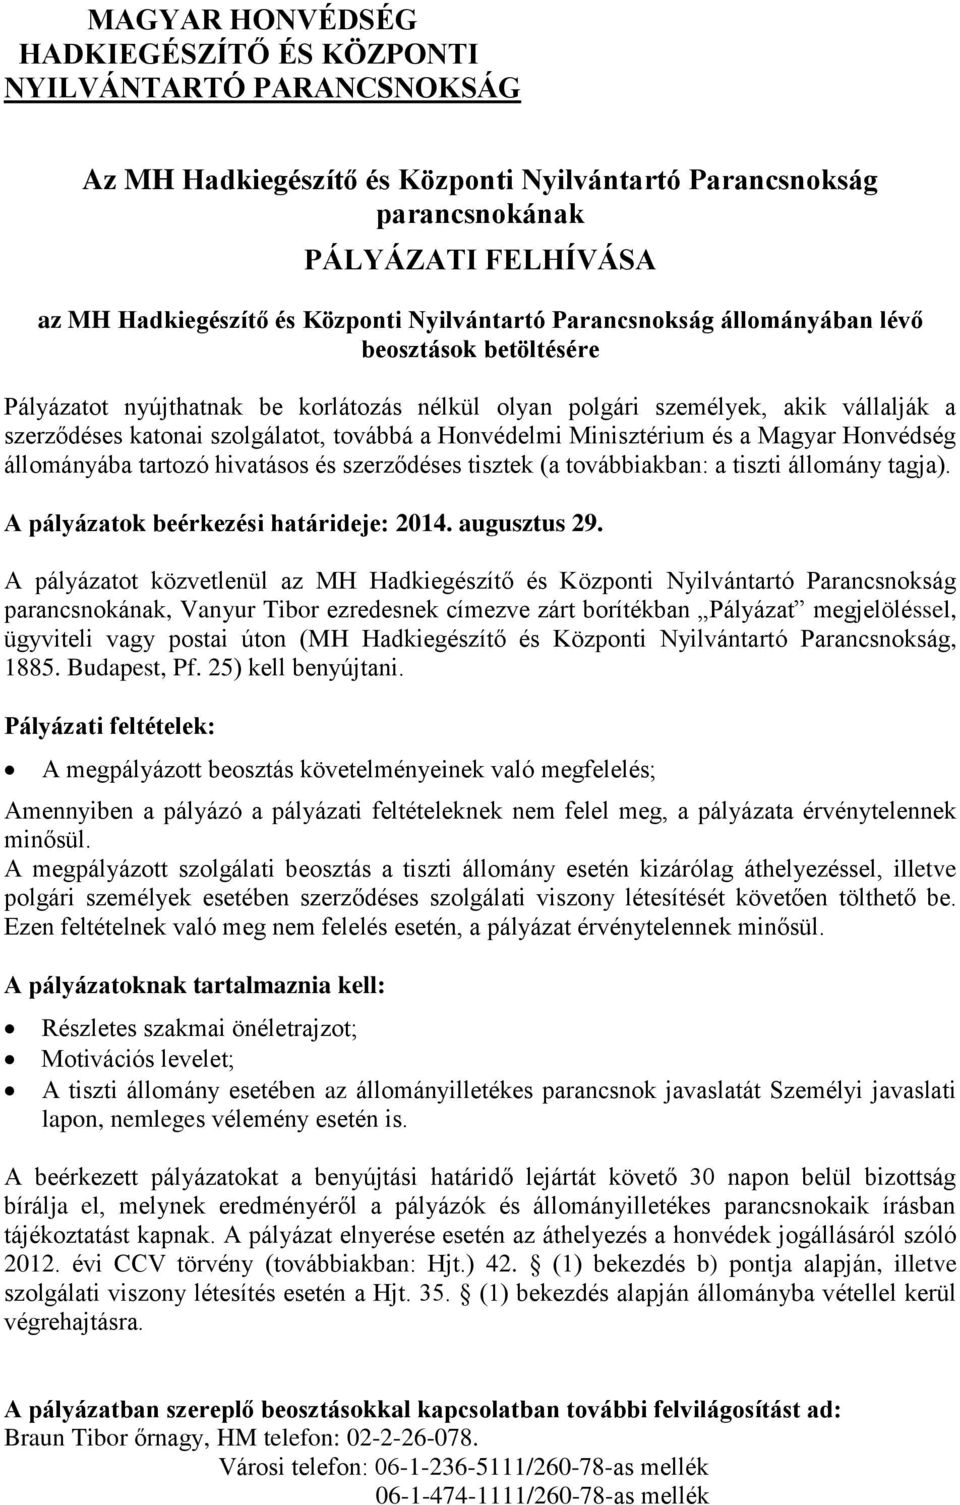 Honvédelmi Minisztérium és a Magyar Honvédség állományába tartozó hivatásos és szerződéses tisztek (a továbbiakban: a tiszti állomány tagja). A pályázatok beérkezési határideje: 2014. augusztus 29.